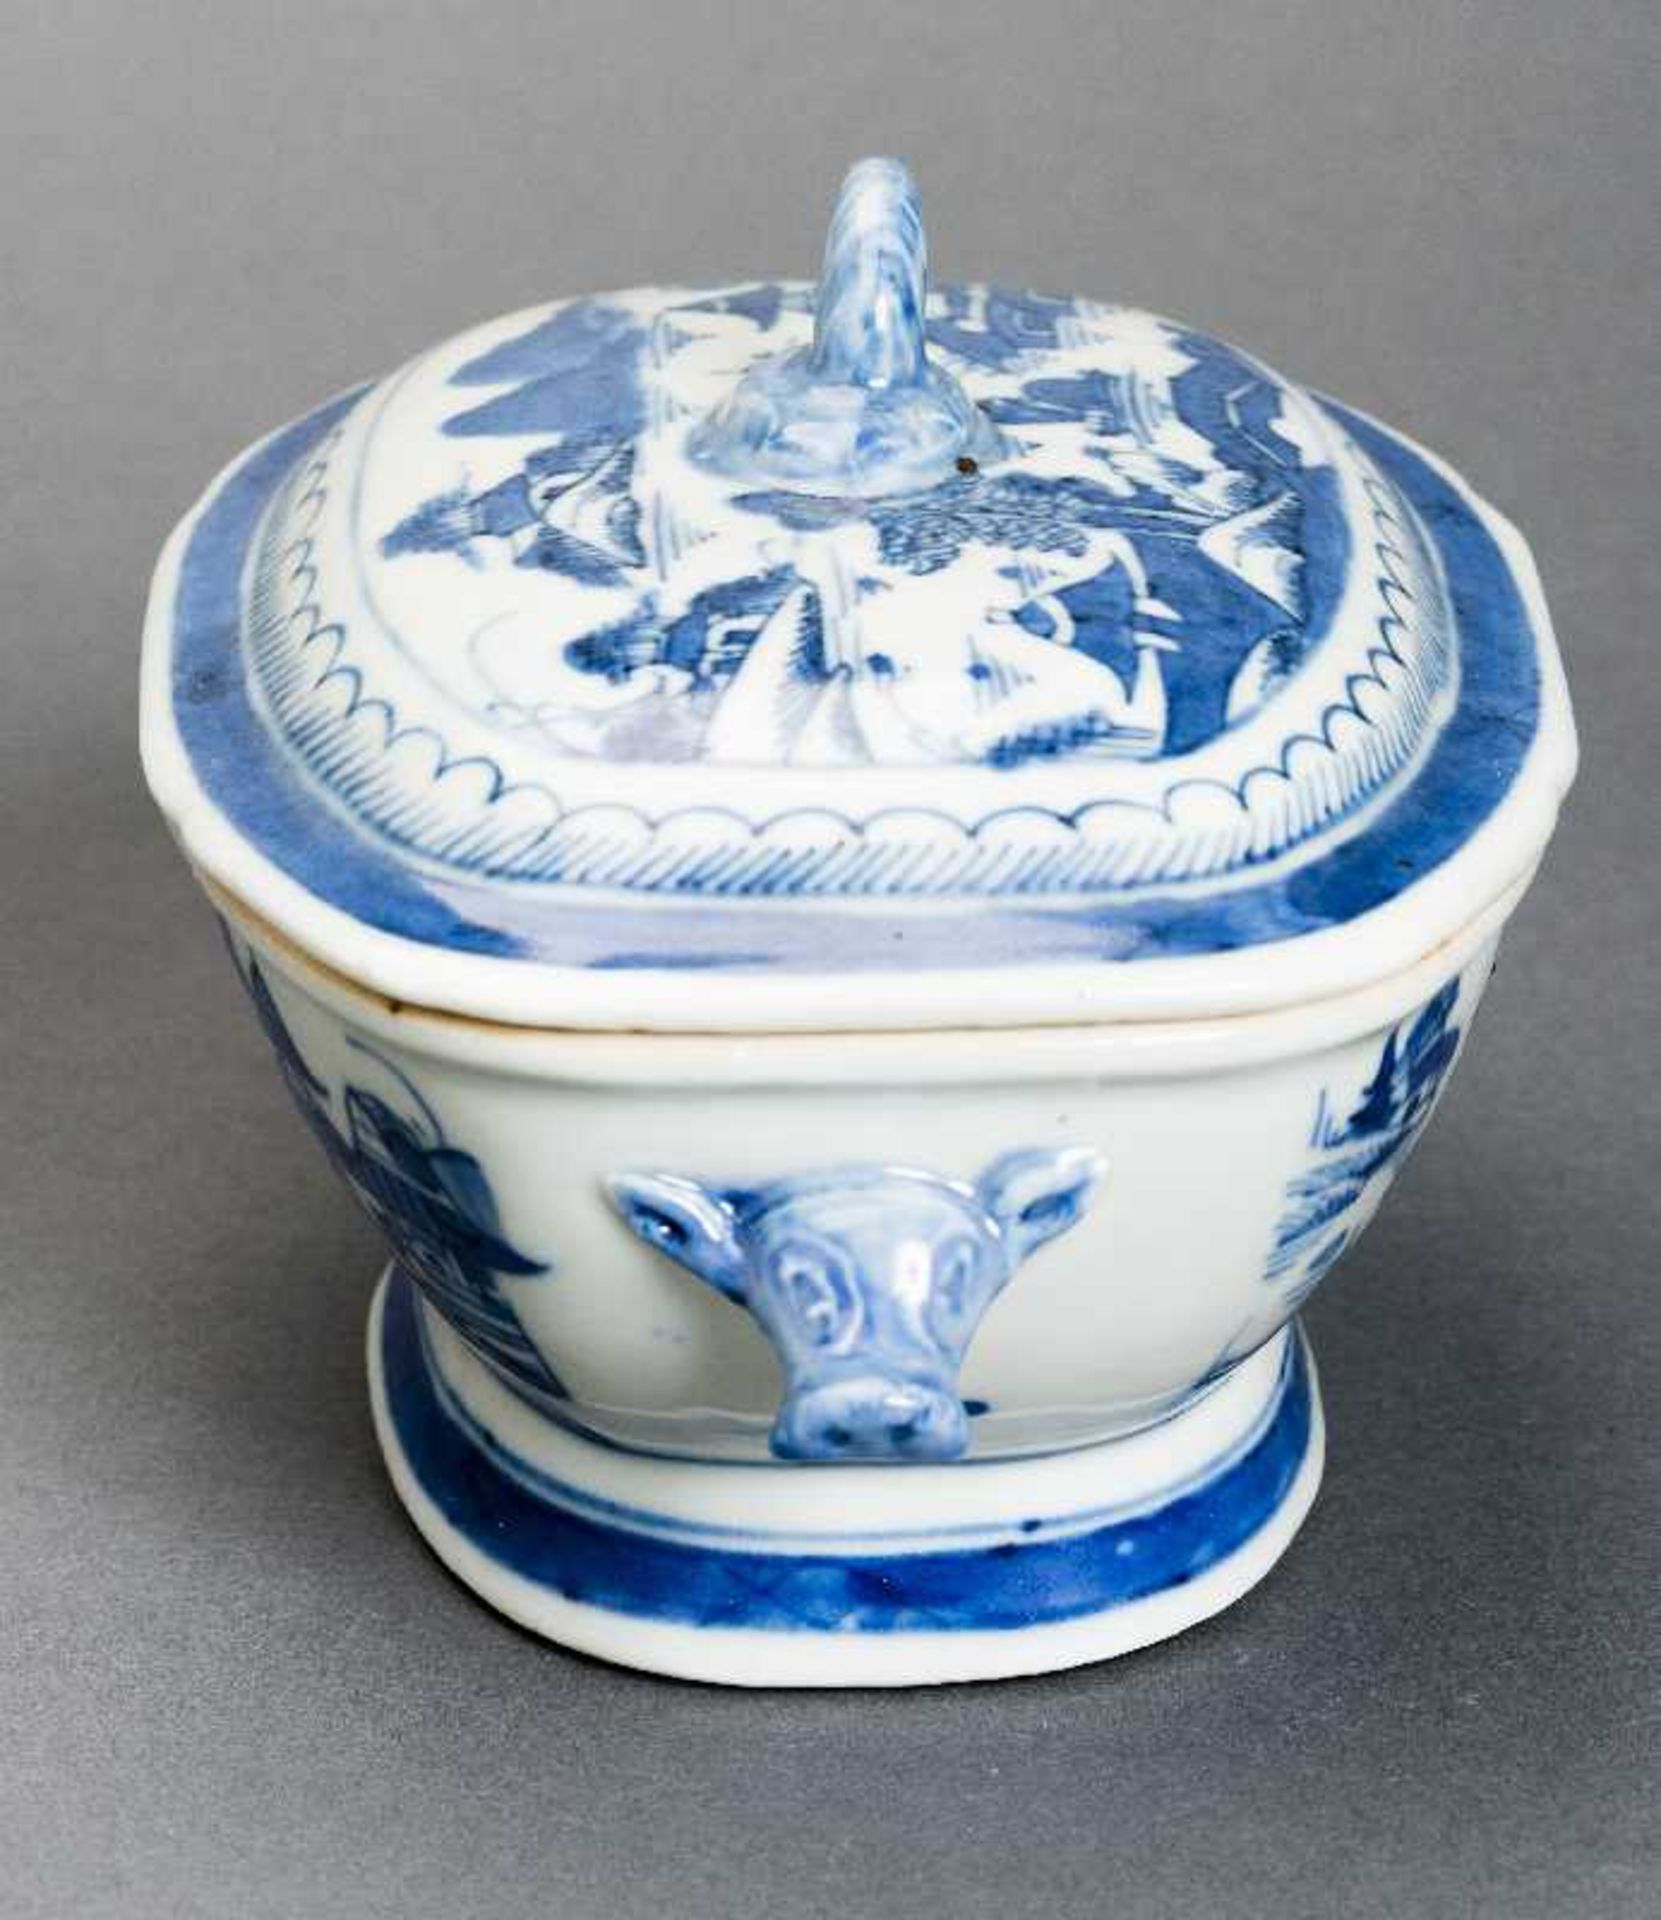 DECKELSCHALE Blauweiß-Porzellan. China, Qing-Dynastie, 19. Jh. Diese sehr ansprechende oval- - Bild 4 aus 6